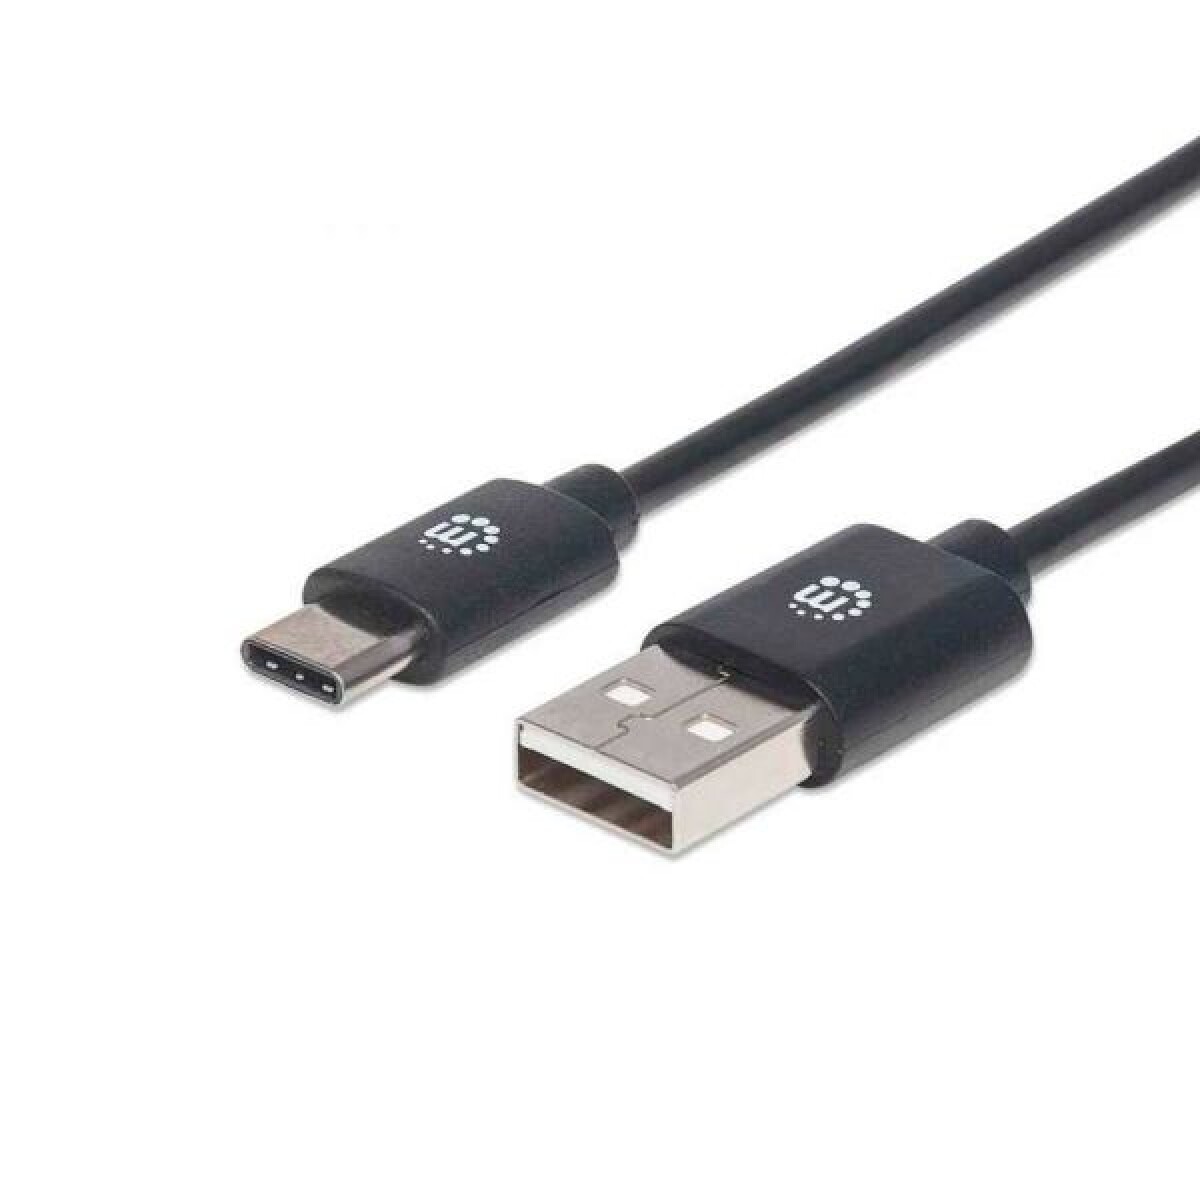 Cable USB C a USB A macho/macho 2,0 mts Manhattan - 3736 